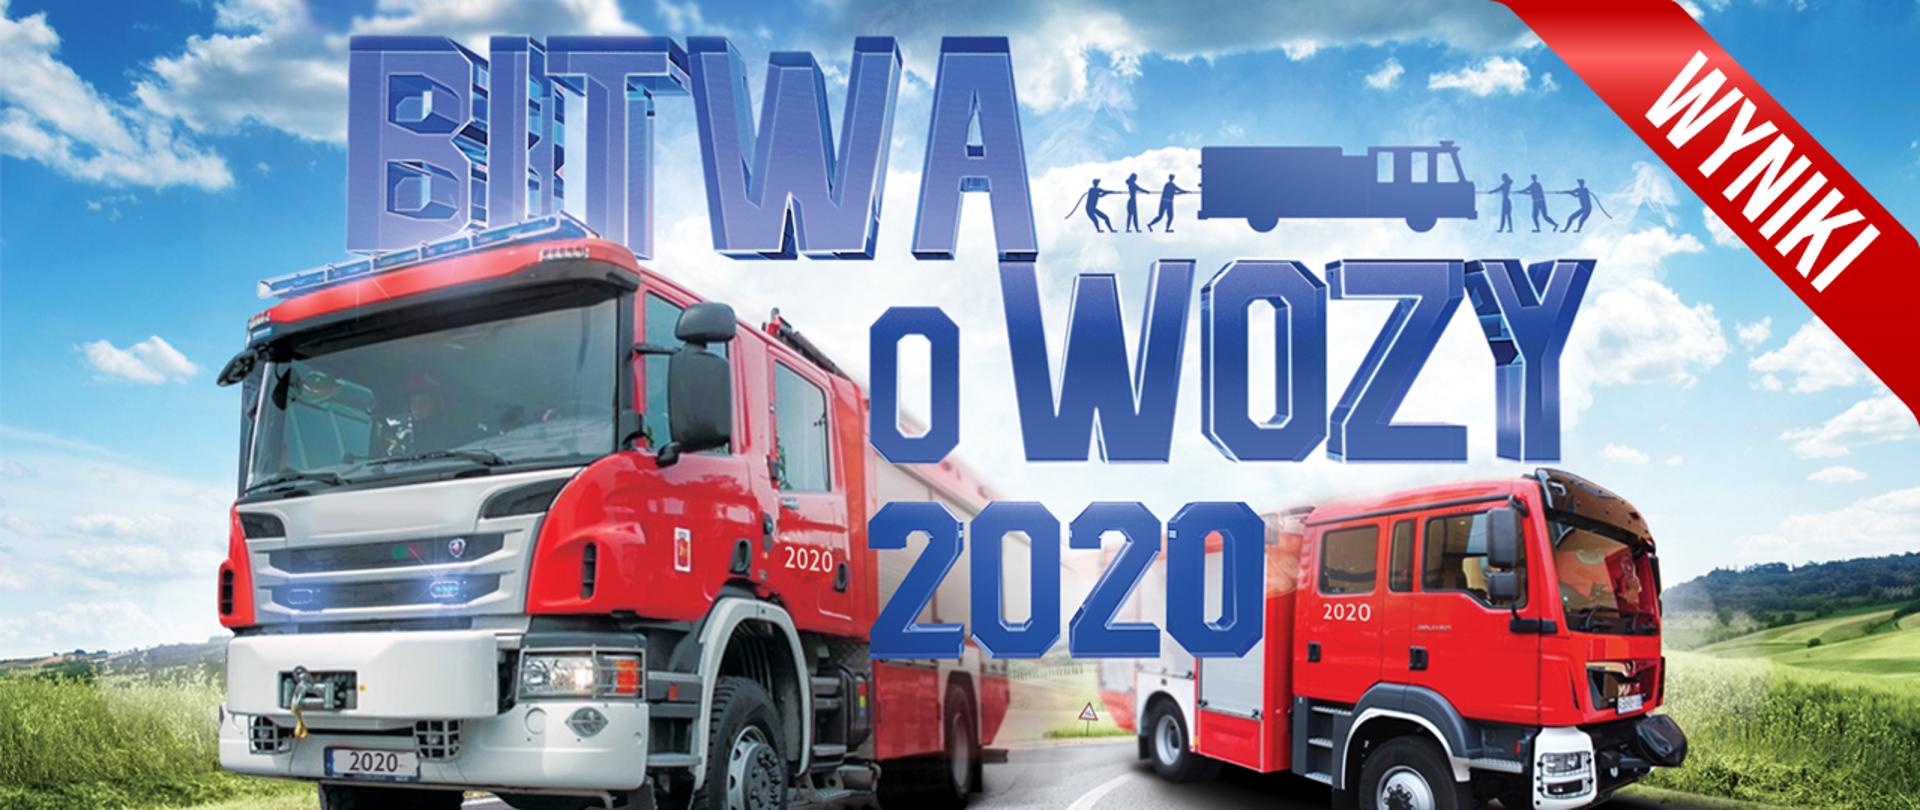 Grafika promująca akcję profrekwencyjną MSWiA, na której widnieją dwa wozy ratowniczo-gaśnicze pędzące ulicą oraz napis: "Bitwa o wozy 2020" z szarfą z napisem: wyniki.